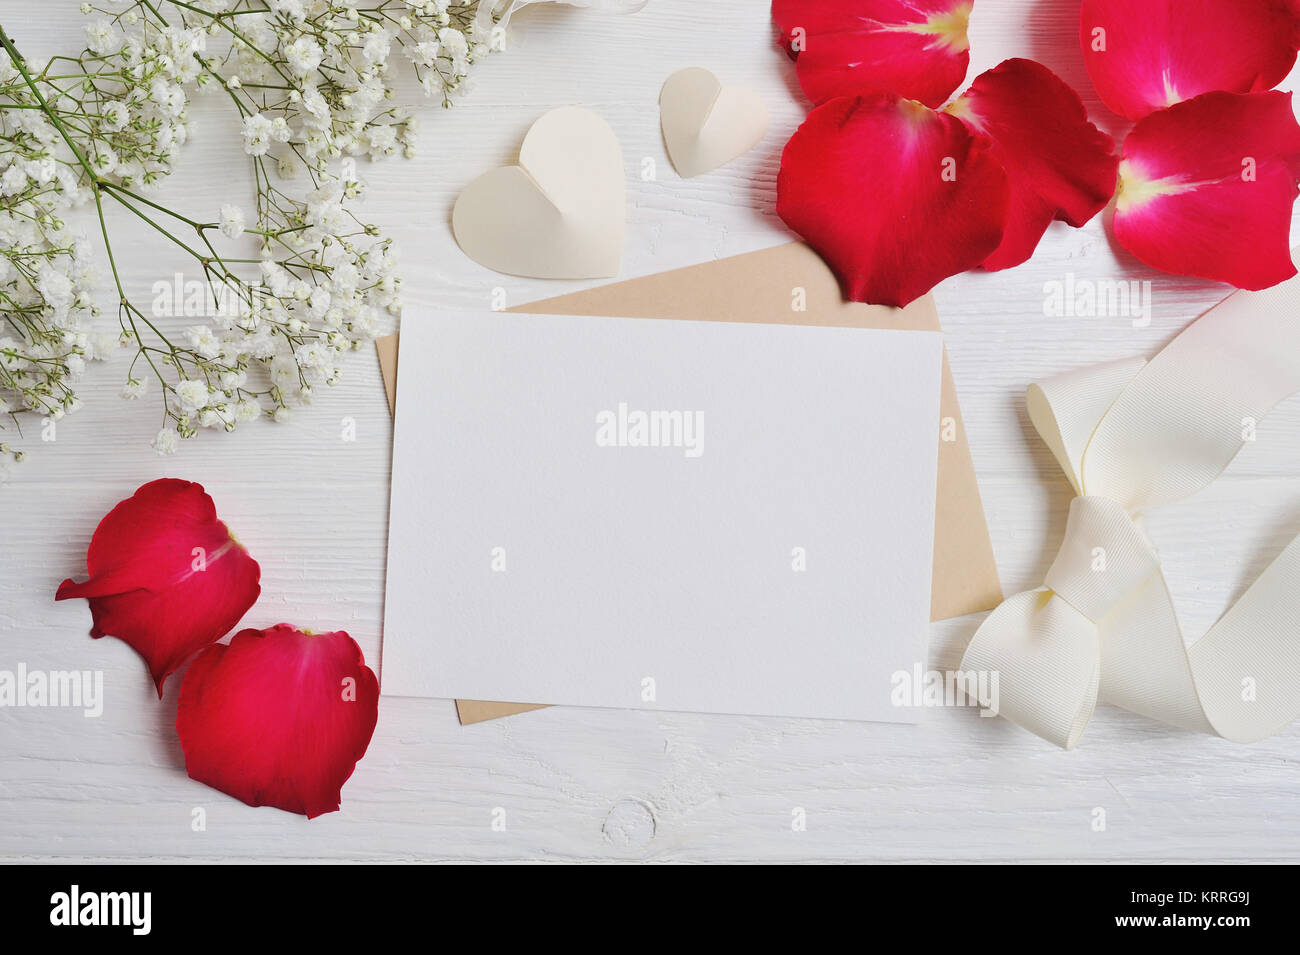 Composition de fleurs maquette gypsophila avec un coeur lettre avec red rose petals on white background. Le jour de la Saint-Valentin. Mise à plat, vue du dessus wi Banque D'Images